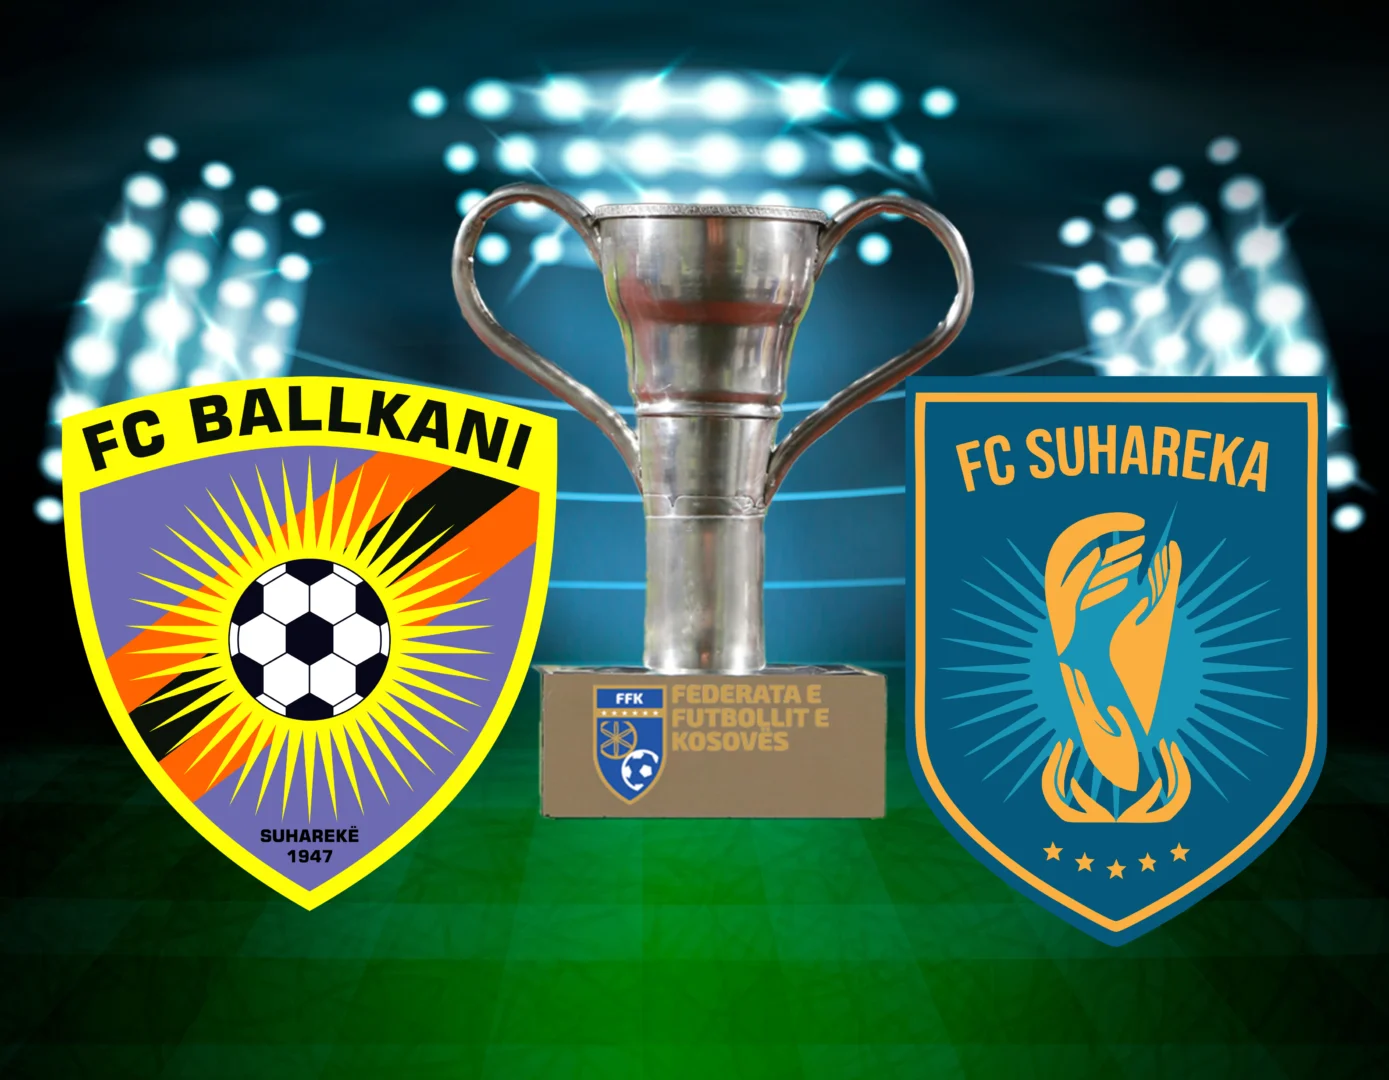 Ballkani në luftë për ta konfirmuar vendin në finale, Suhareka për histori – formacionet zyrtare